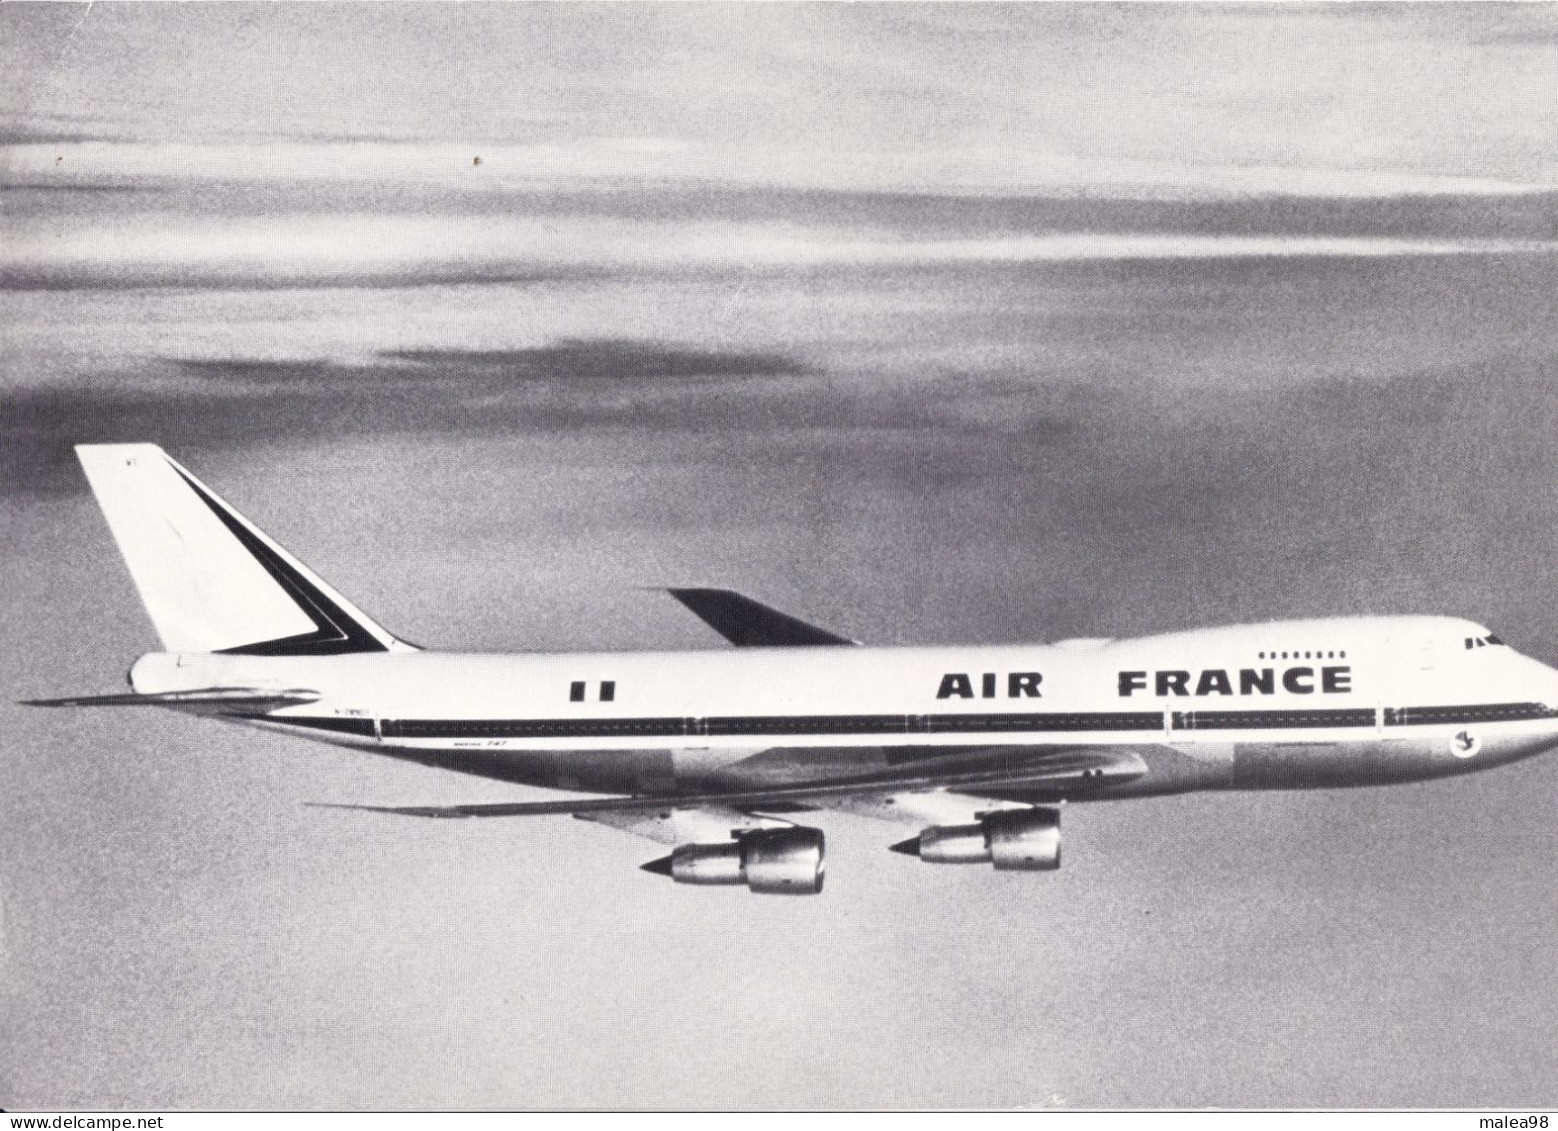 BOEING  747   FICHE TECHNIQUE PUBLIEE PAR SERVICE TECHNIQUE AIR FRANCE EN 1974 - Écorchés (schémas)